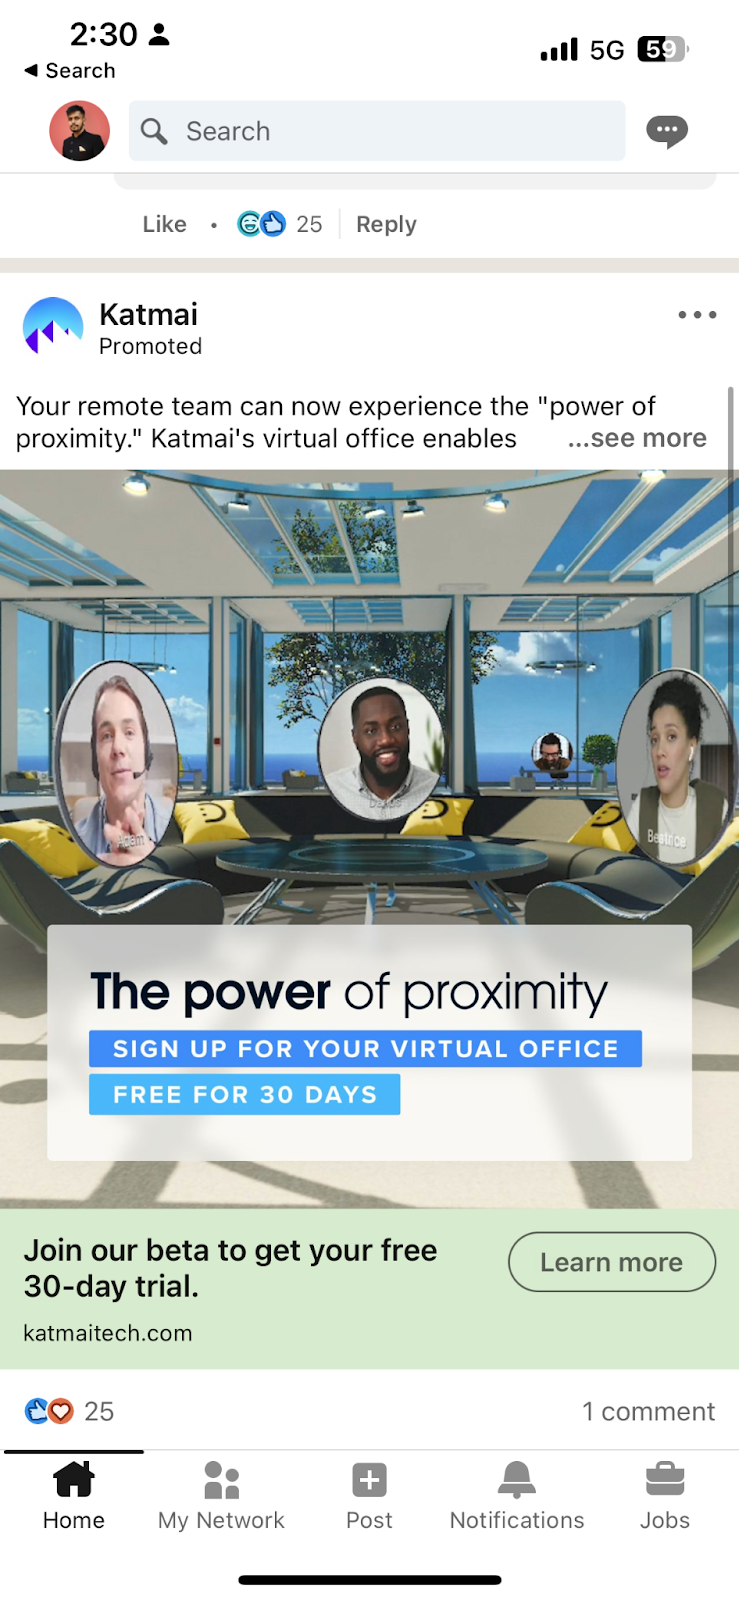 A paid LinkedIn ad from Katmai